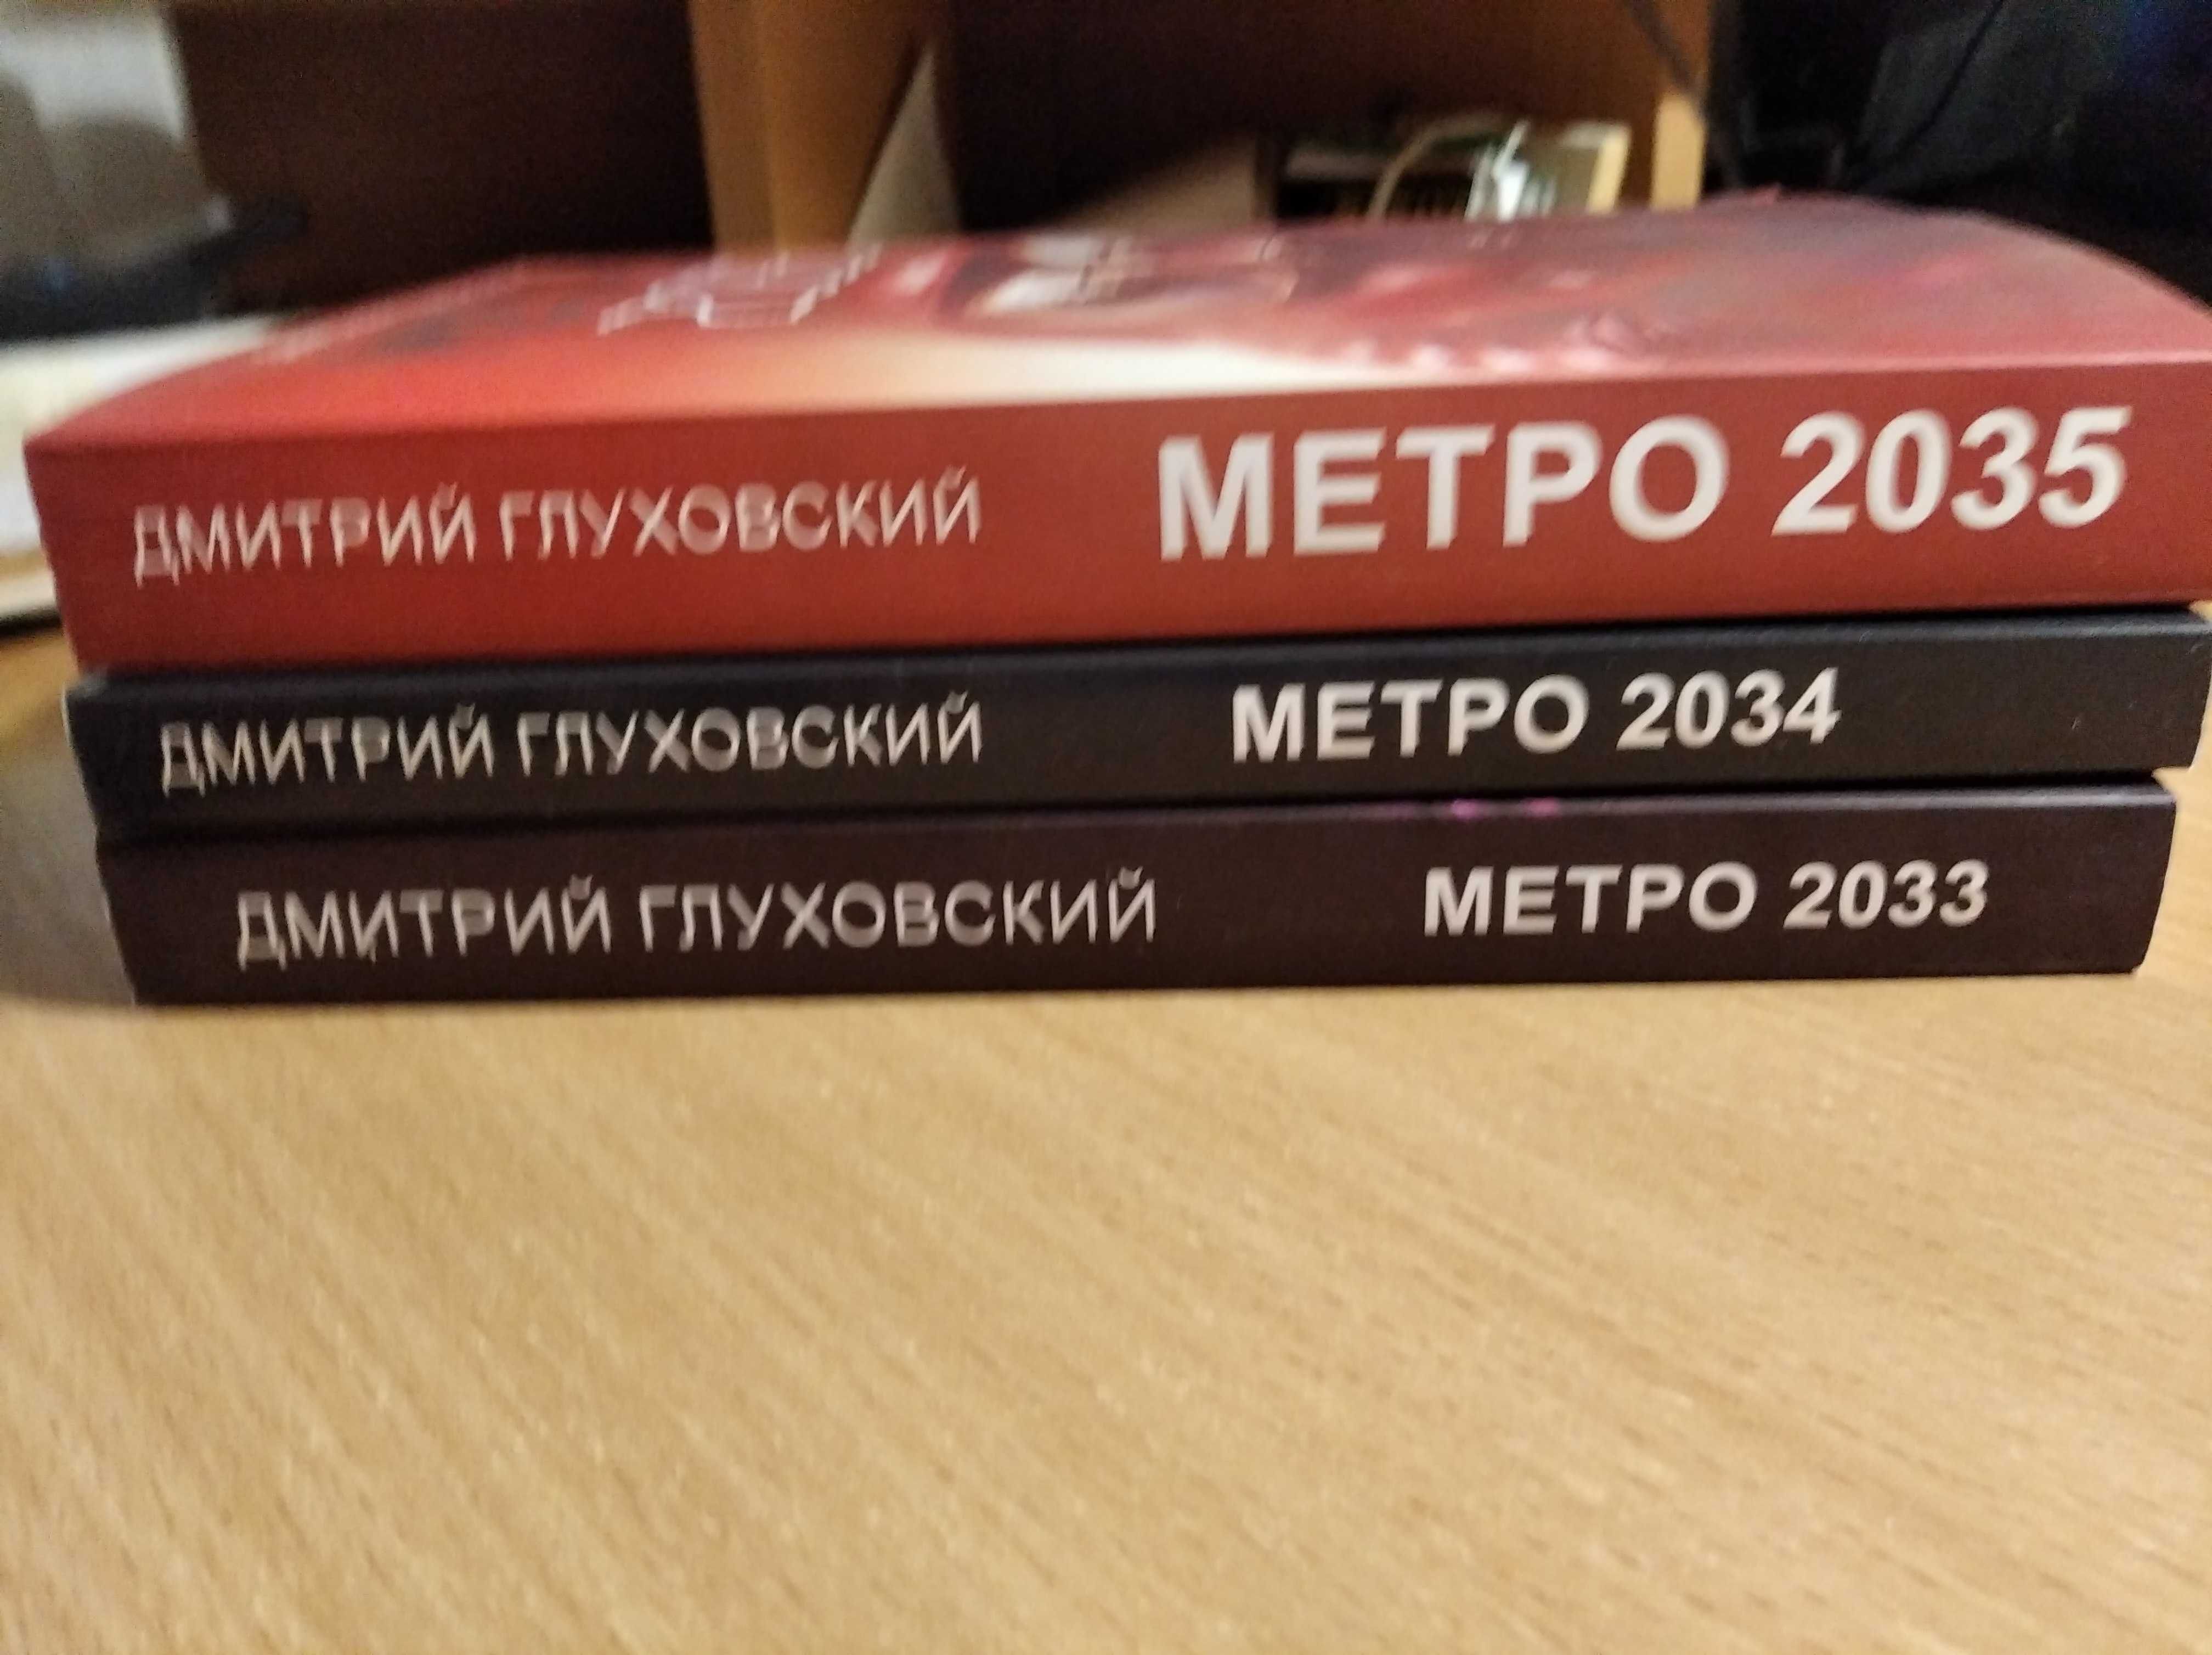 фентэзи-метро 2033.2034.2035